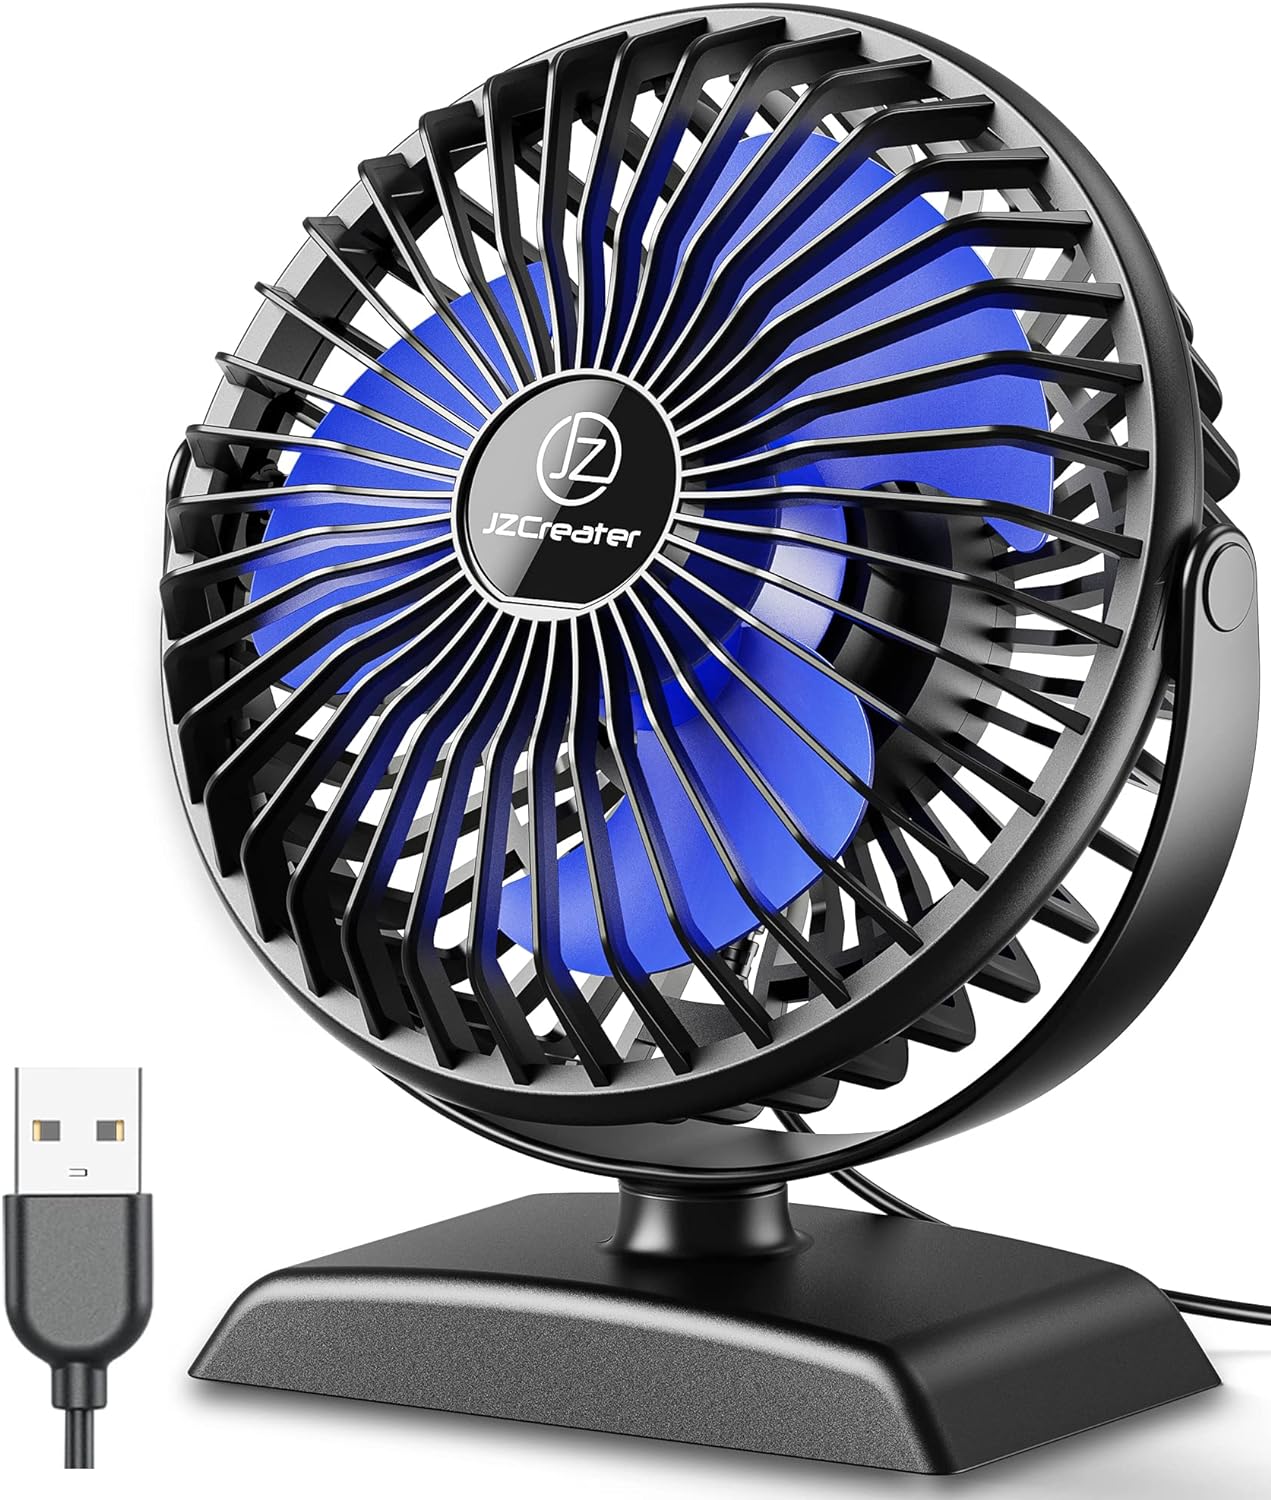 JZCreater Desk Fan, USB Fan Protable, 3 Speed Airflow, 360 Rotation Personal Fan, Table Desktop Cooling Fan, Quiet Mini Desk Fan, USB Powered, Mini Small Fan for Home Office Bedroom Car Travel, Black